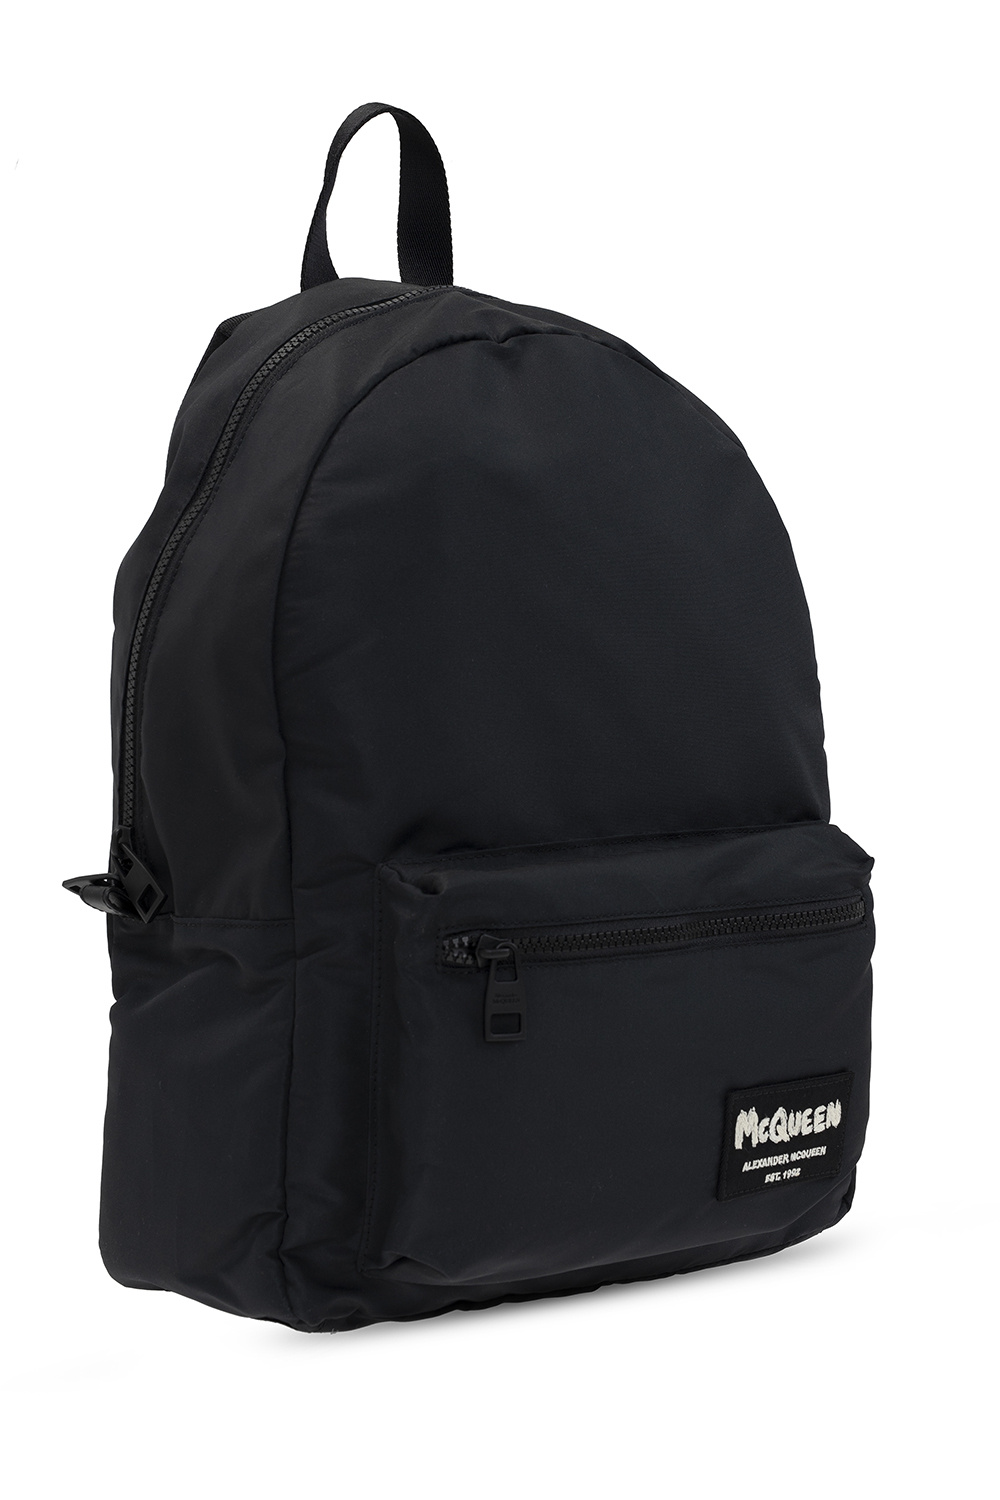 Alexander McQueen 'Metropolitan' backpack | Men's Bags | IetpShops